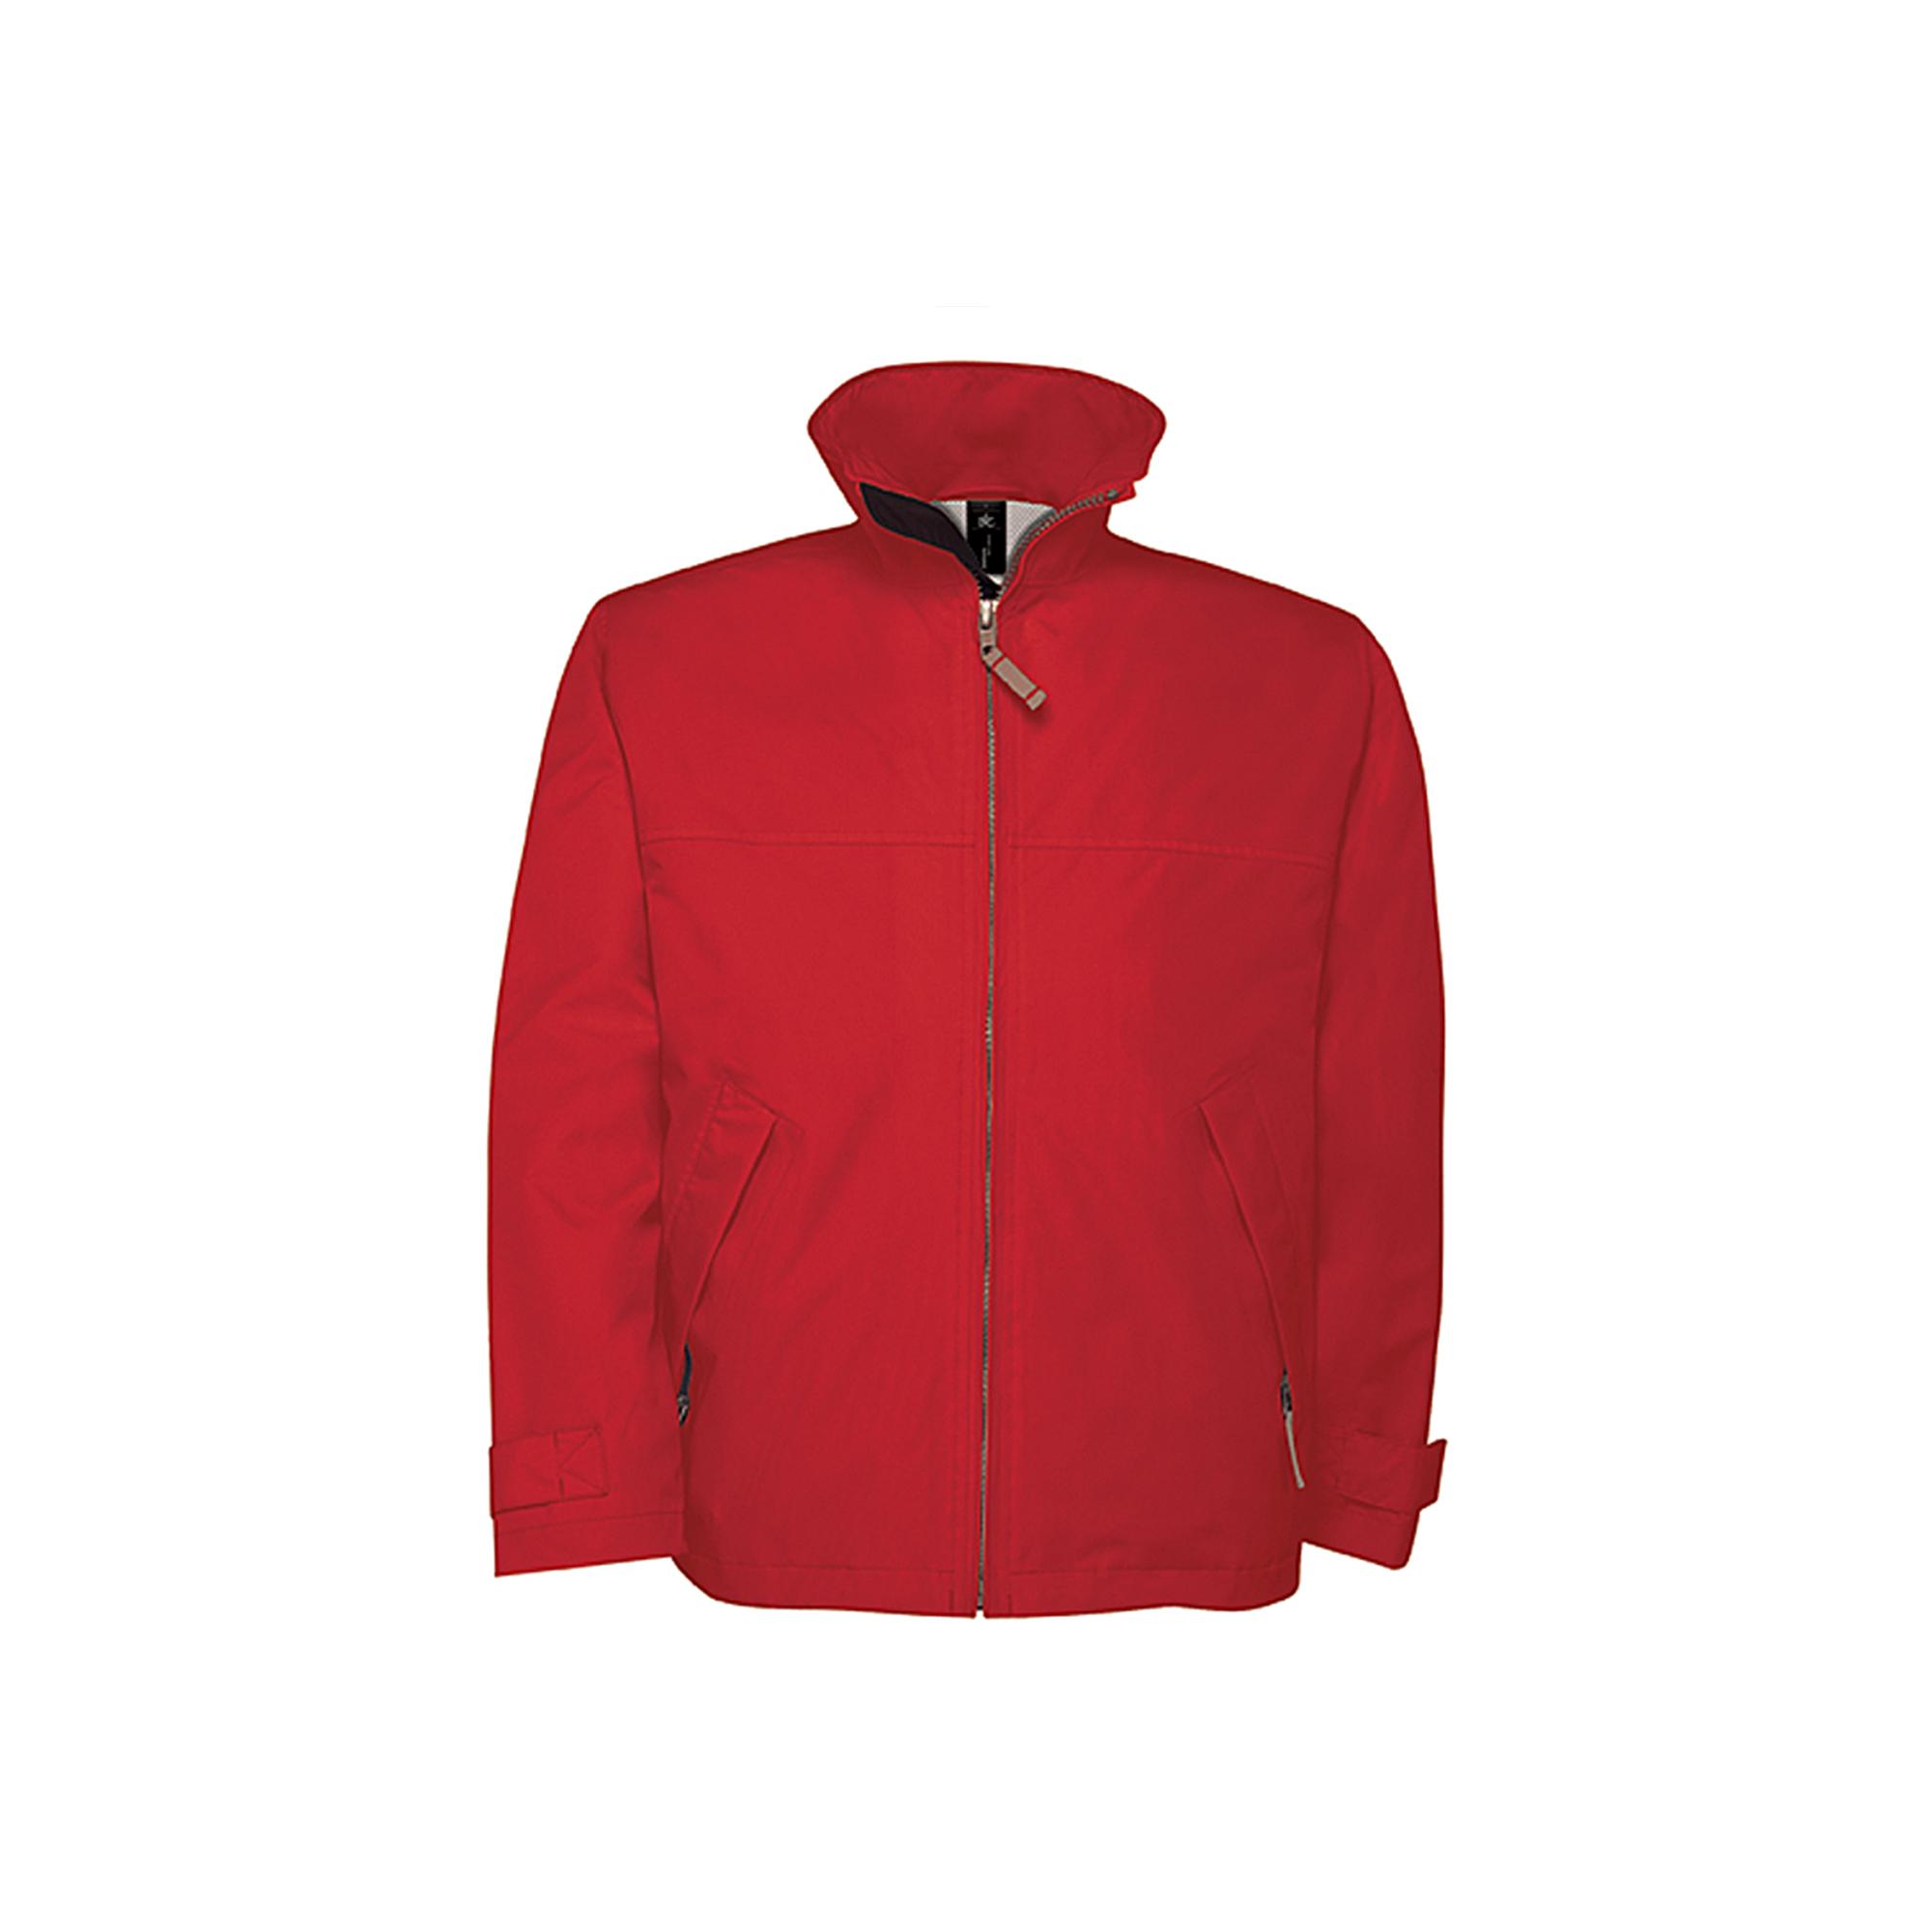 Куртка мужская Sparkling/men, цвет красный, фото 1